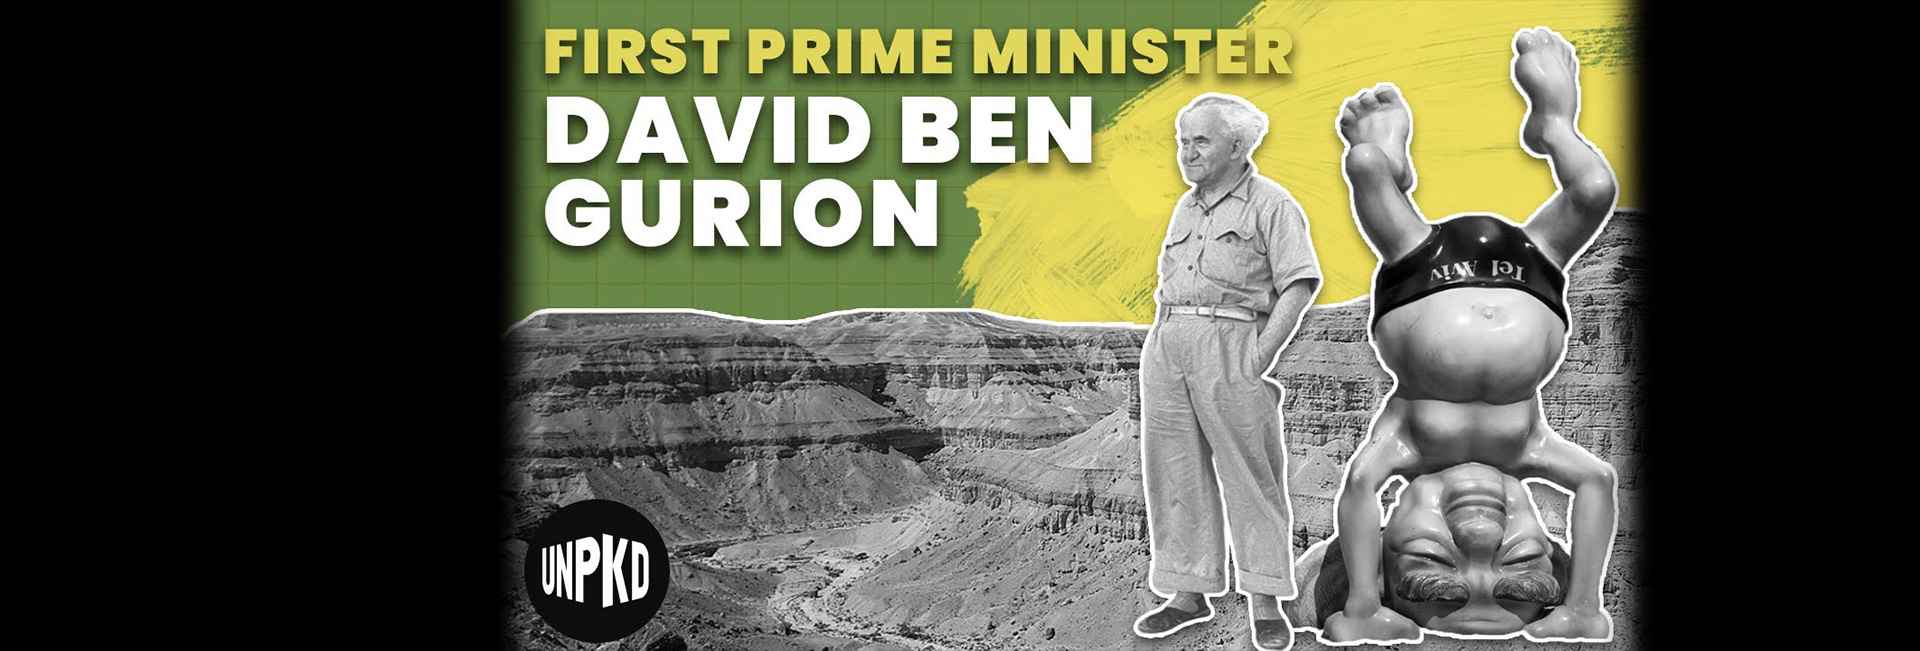 David Ben Gurion: Israel’s First Prime Minister